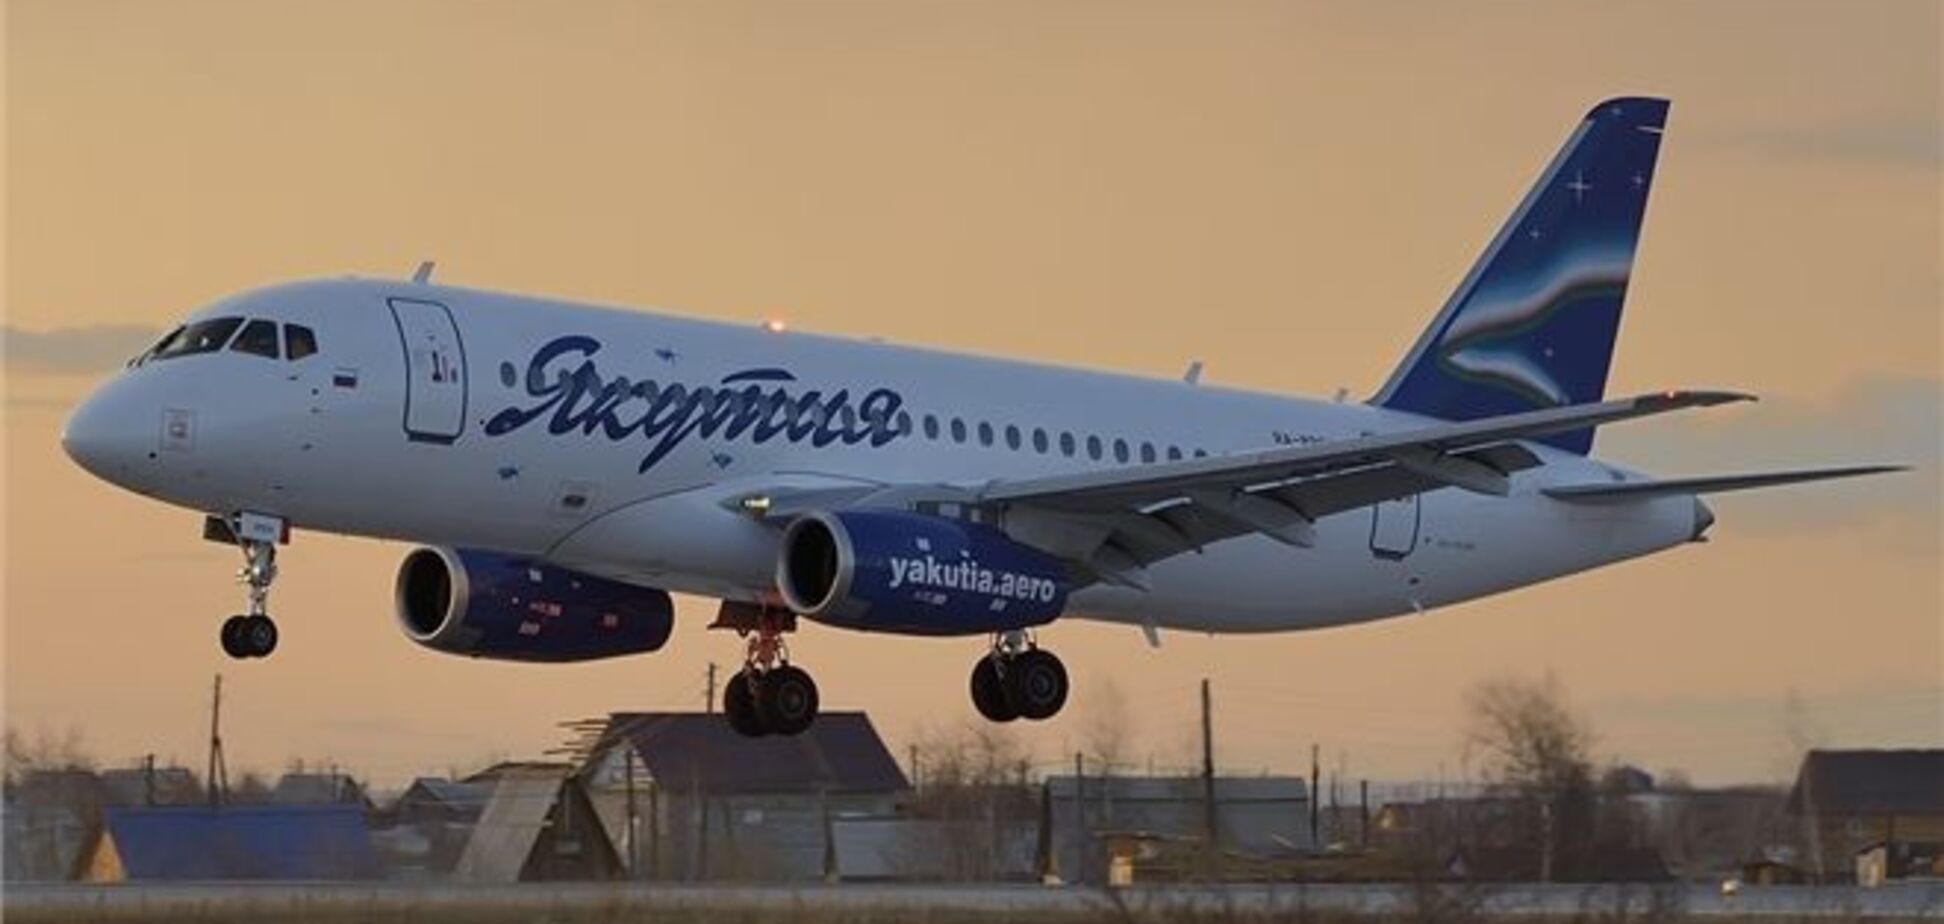 У пассажирского самолета, летевшего в Иркутск, отказал двигатель